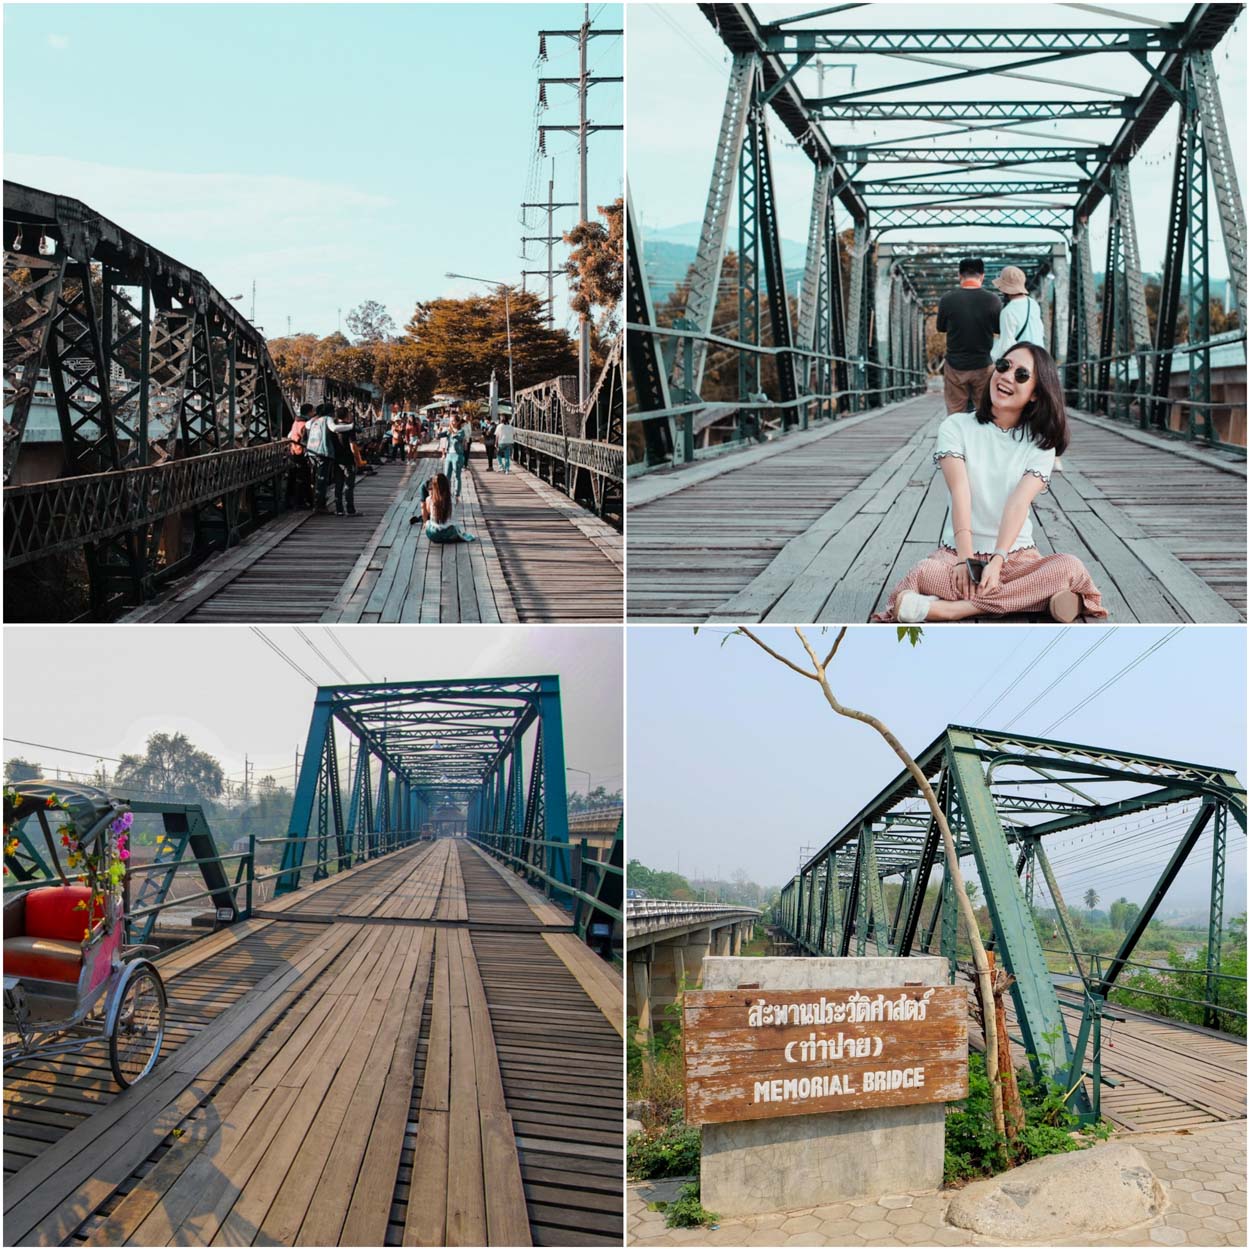 สะพานประวัติศาสตร์ปาย ชมสะพานเก่าแก่ที่สร้างตั้งแต่สมัยสงครามโลกครั้งที่2 มีทั้งความสวยงามของตัวสะพานที่อยู่ระหว่างแม่น้ำและวิวภูเขารอบๆ อีกทั้งของกินอร่อยๆมากมายของจังหวัดแม่ฮ่องสอน